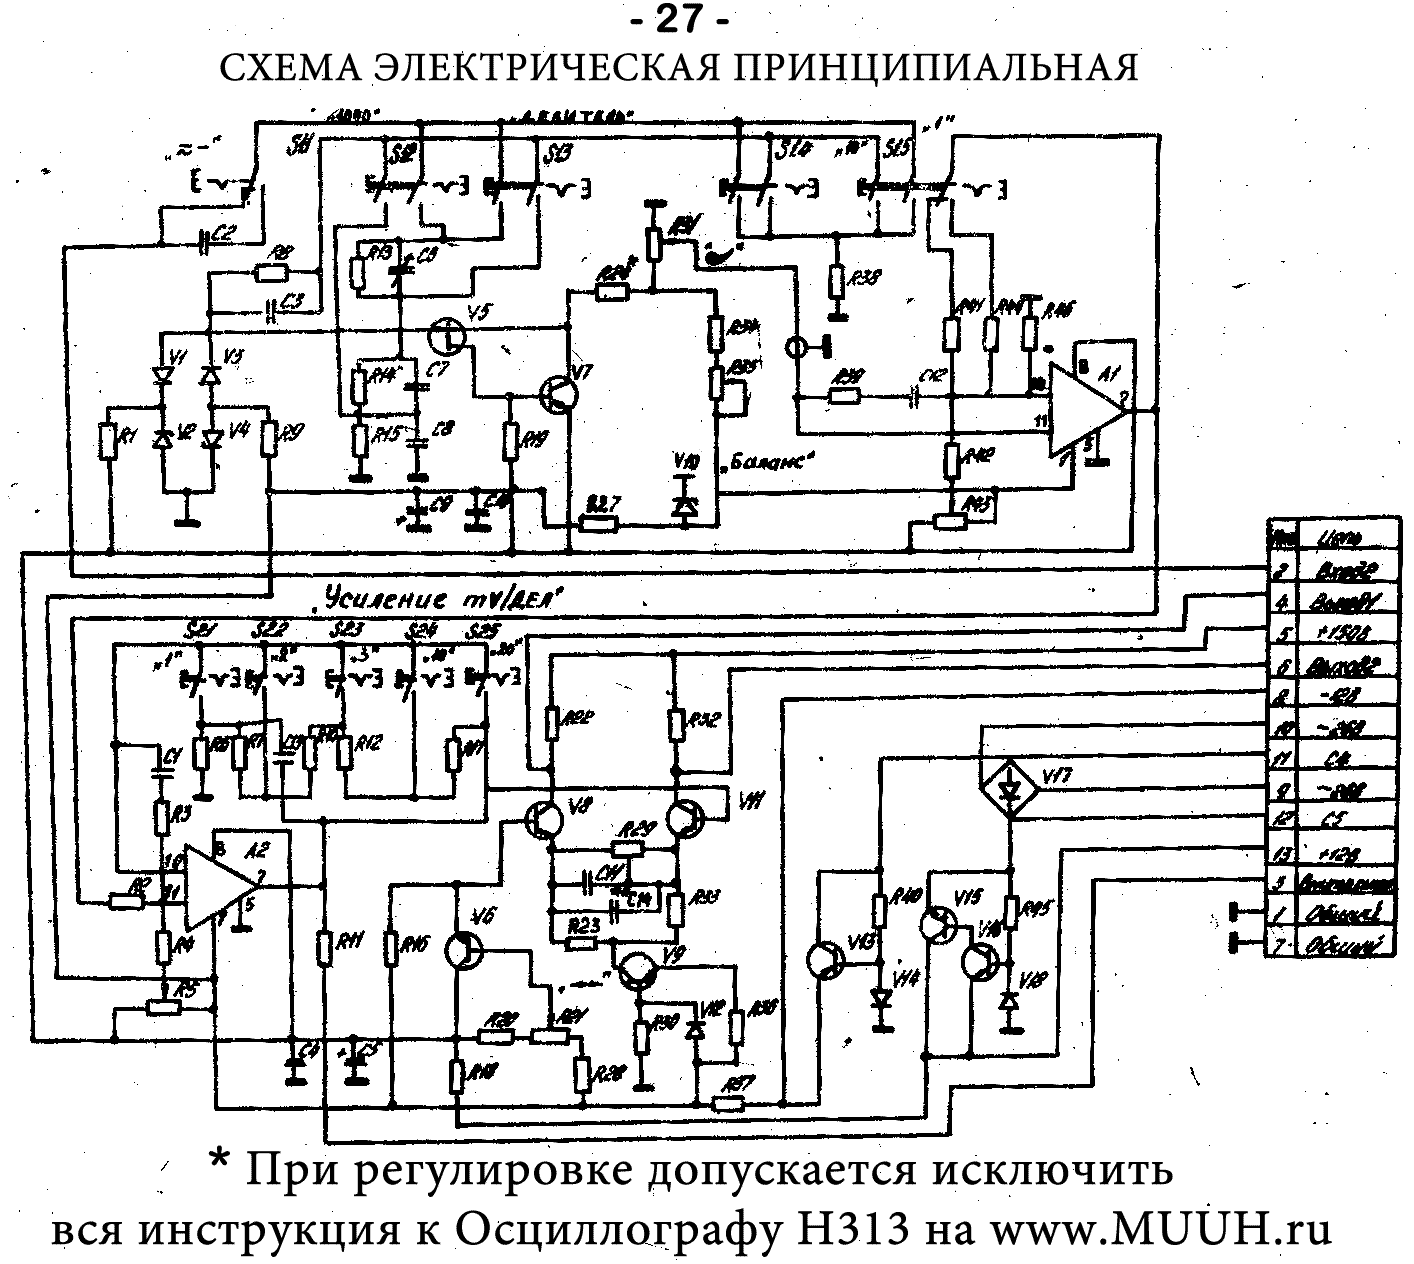 Осциллограф радиолюбителя Н313 Инструкция 5. Устройство осциллографа Н313 5.6 Канал вертикального отклонения луча